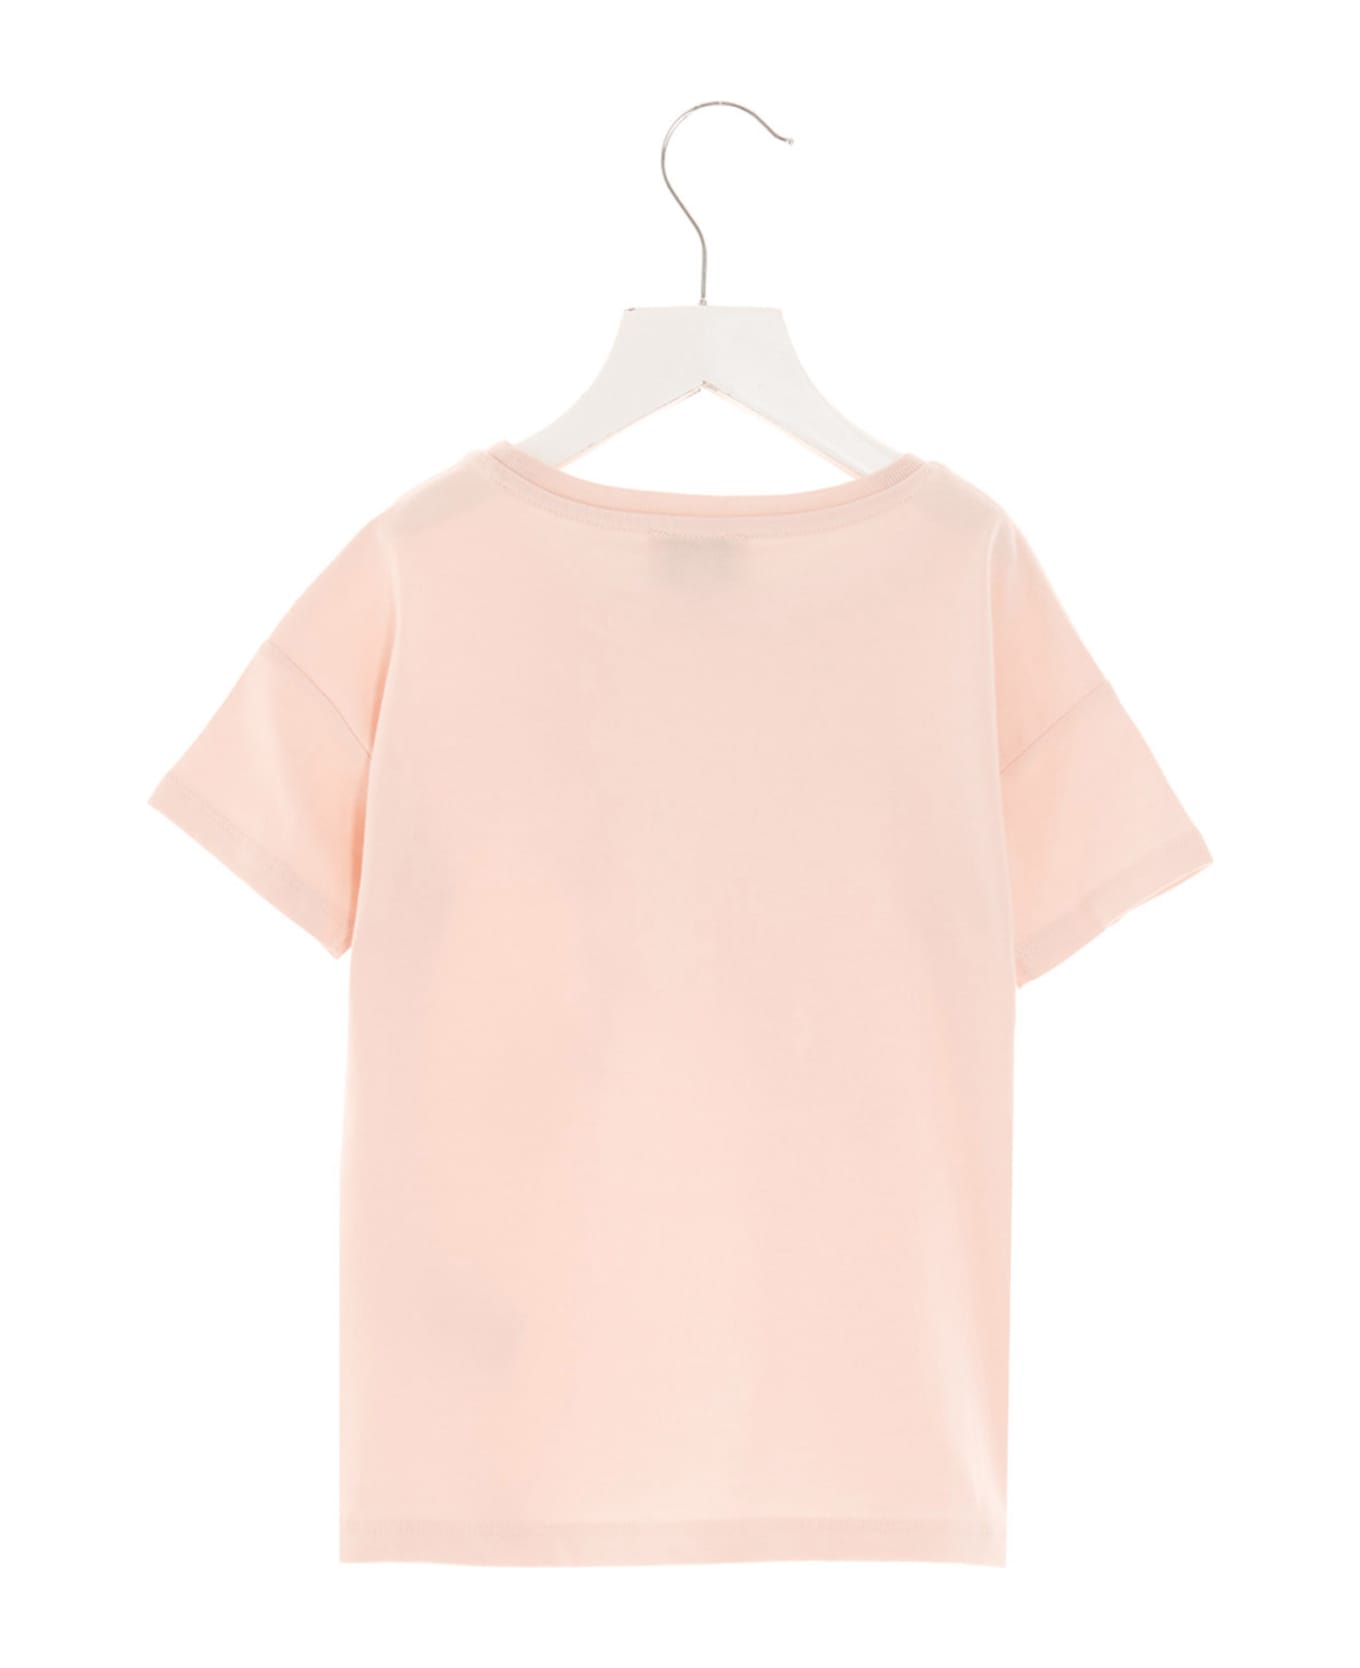 Kenzo Kids Logo T-shirt - Pink